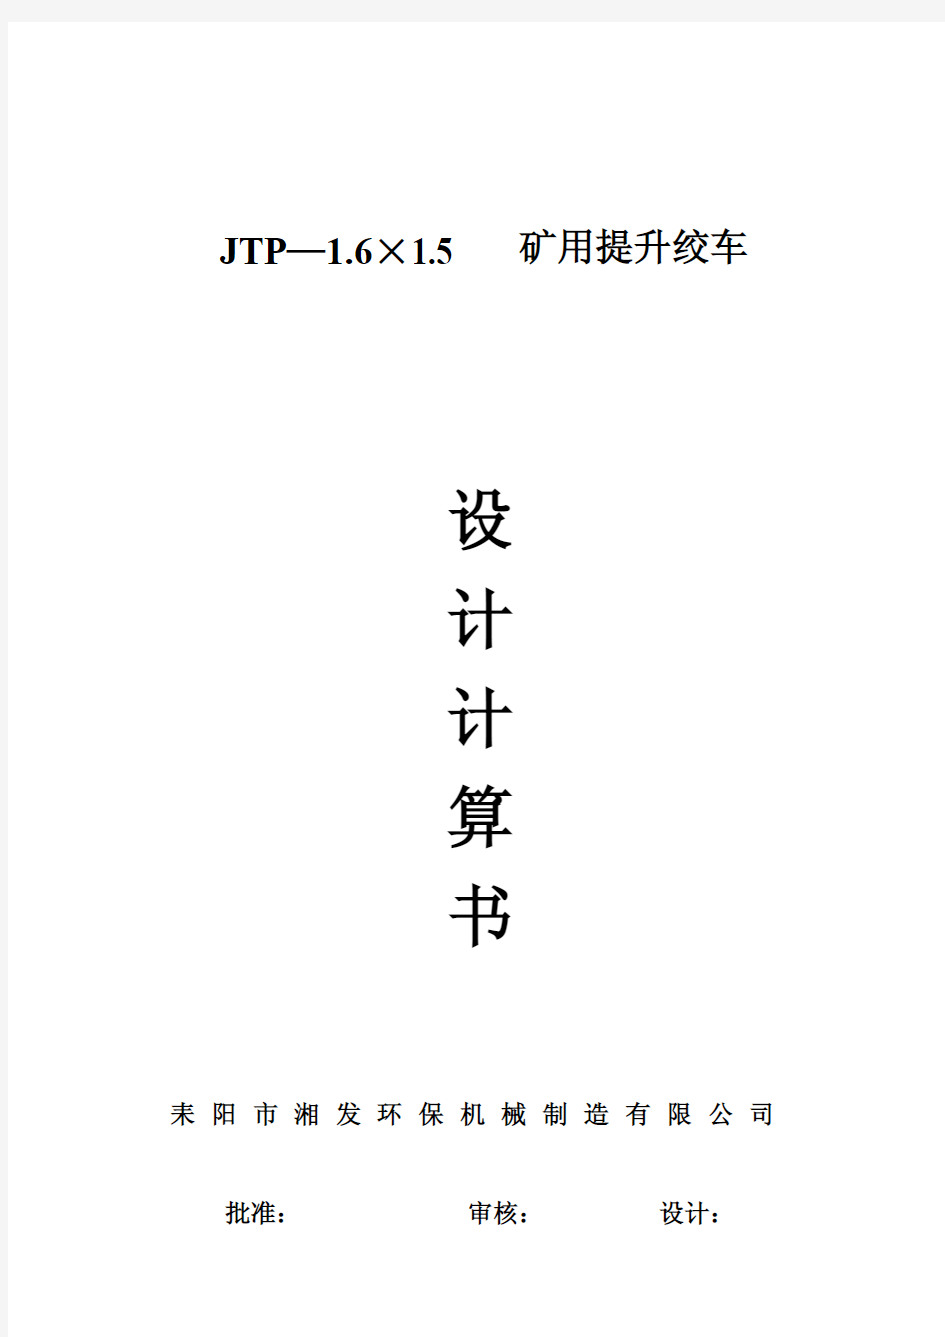 JTP-1.6×1.5P矿用提升绞车设计计算书